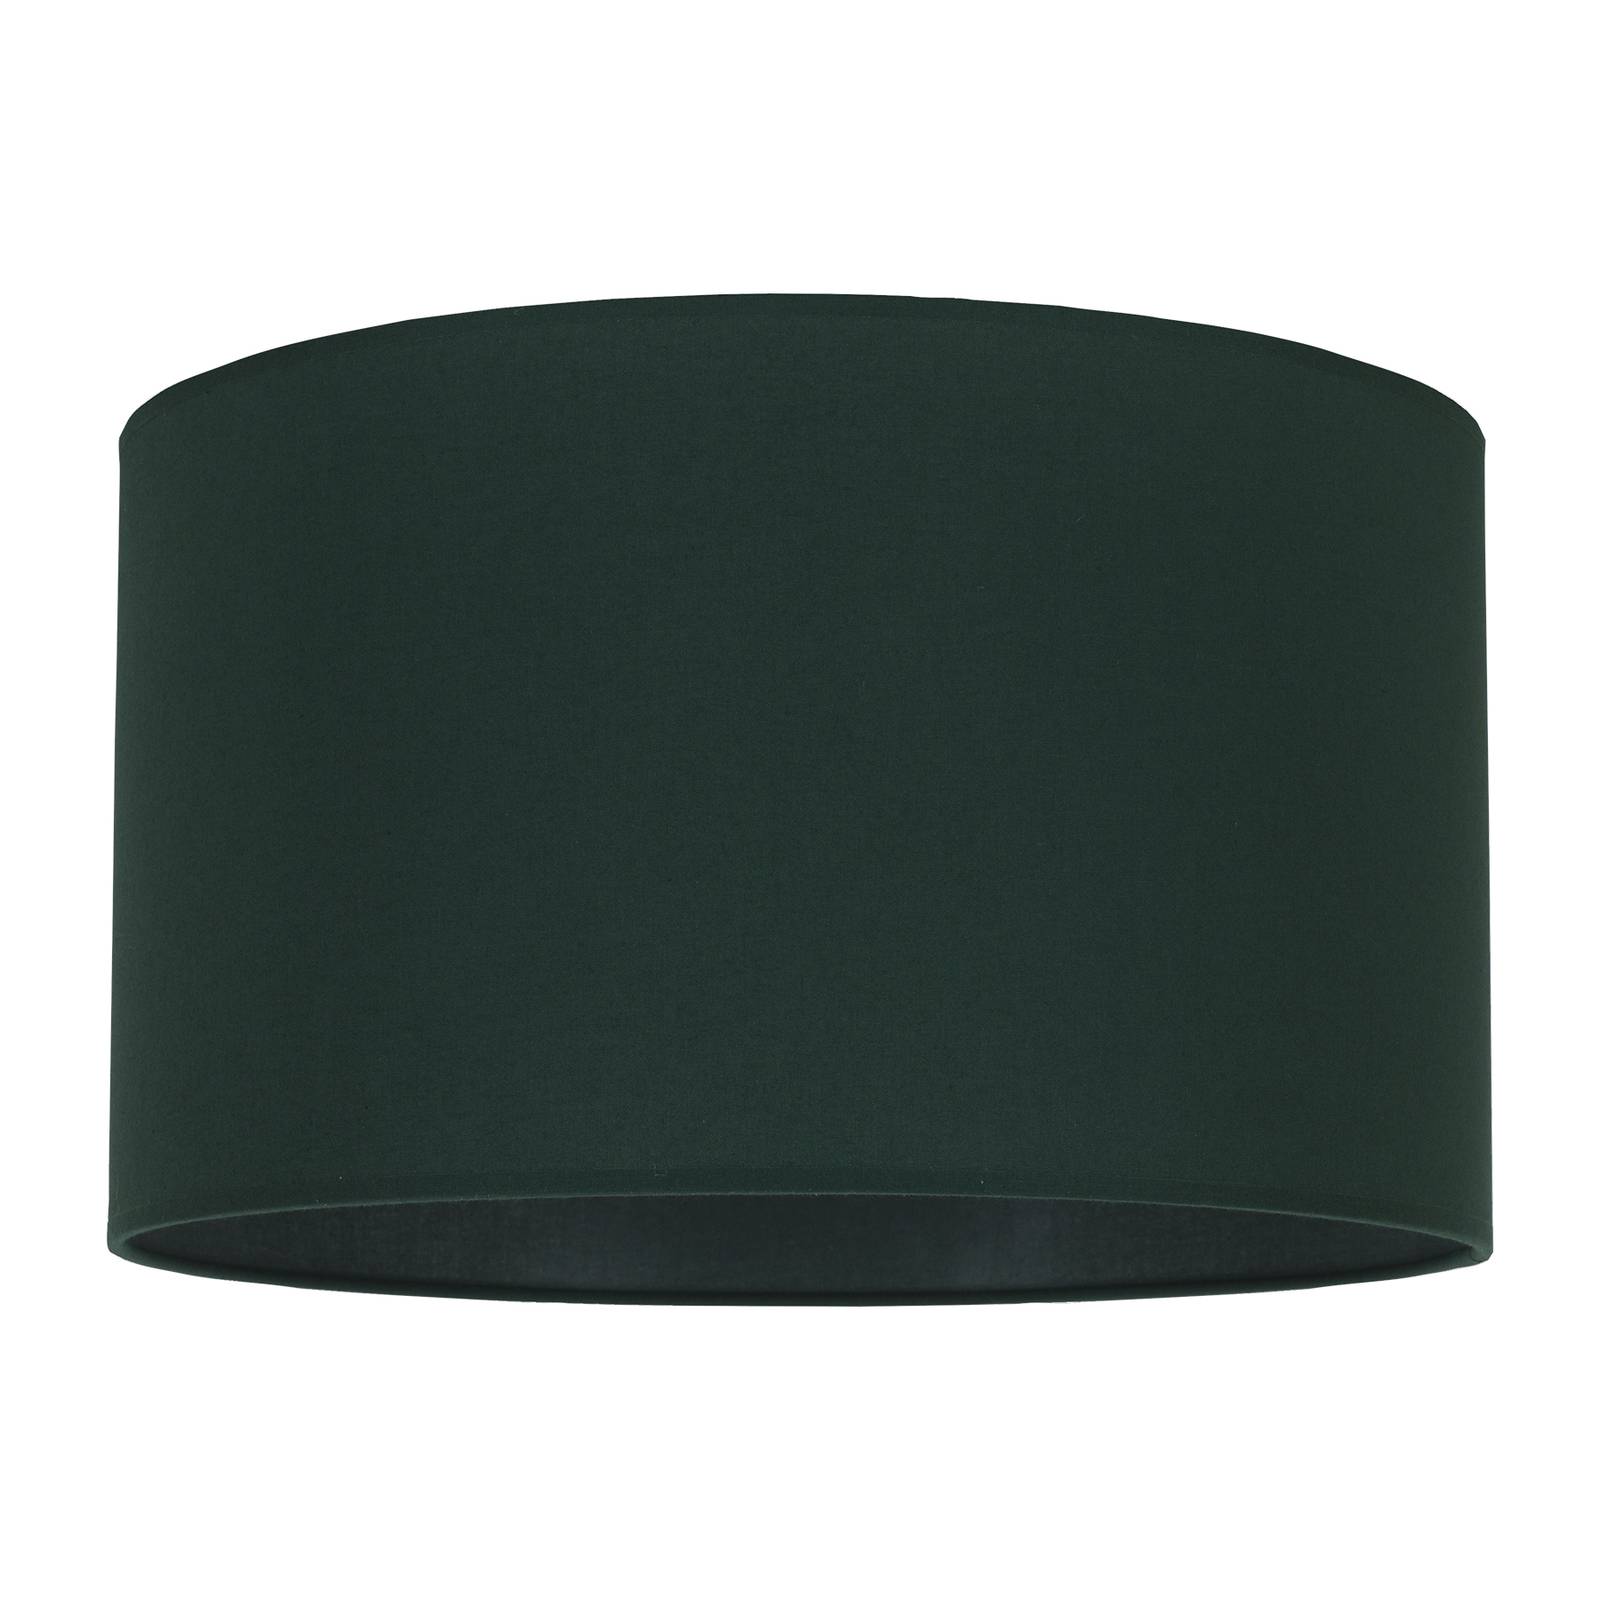 Duolla Lampenschirm Roller, grün, Ø 40 cm, Höhe 22 cm